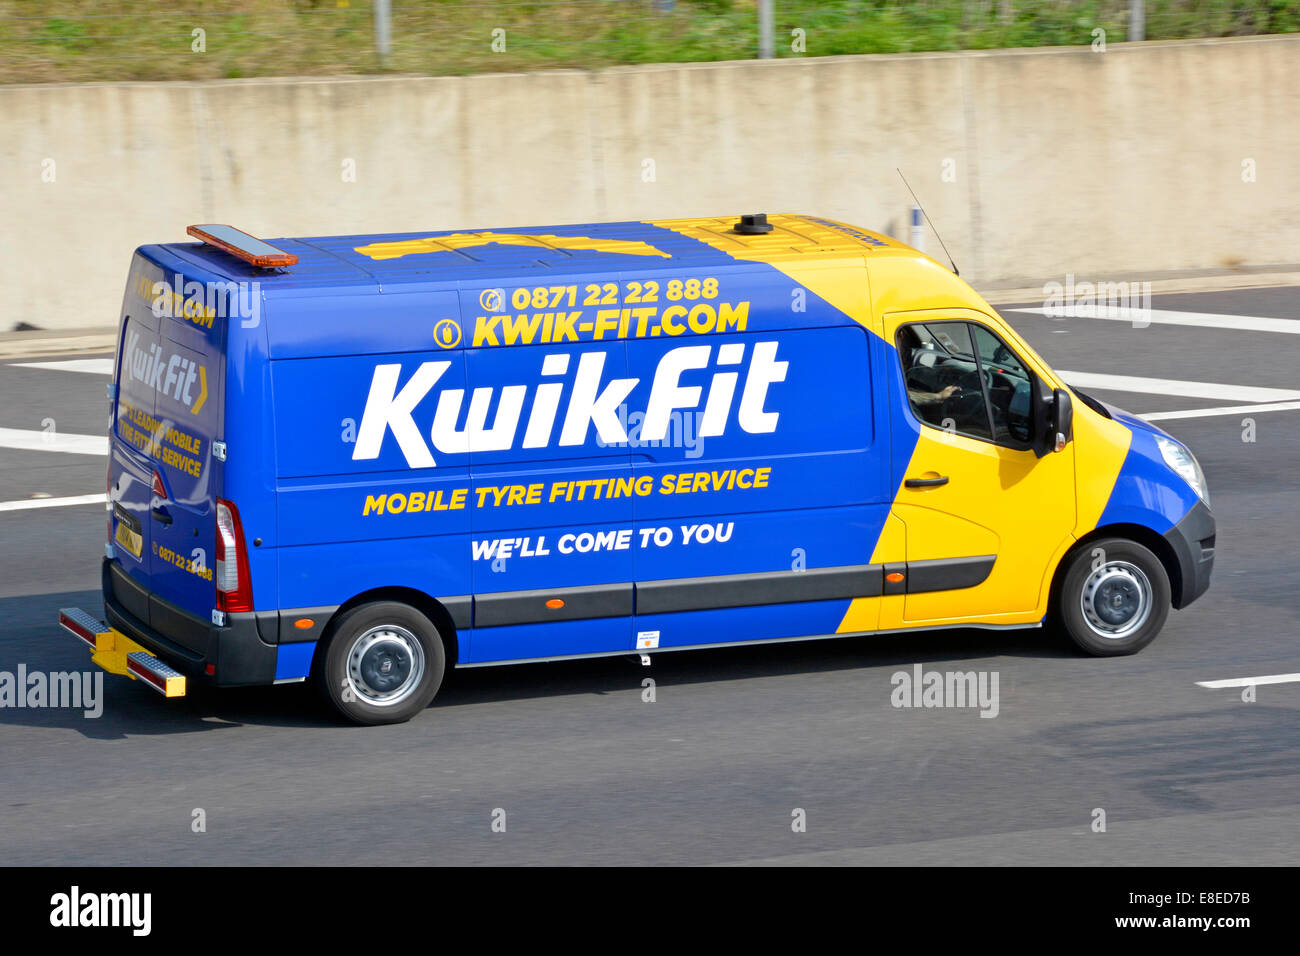 Seitenansicht der Werbung für den mobilen Reifen von Kwik Fit Business auf einem gelb-blauen Van-Fahrer, der auf der englischen Autobahn in Großbritannien unterwegs ist Stockfoto